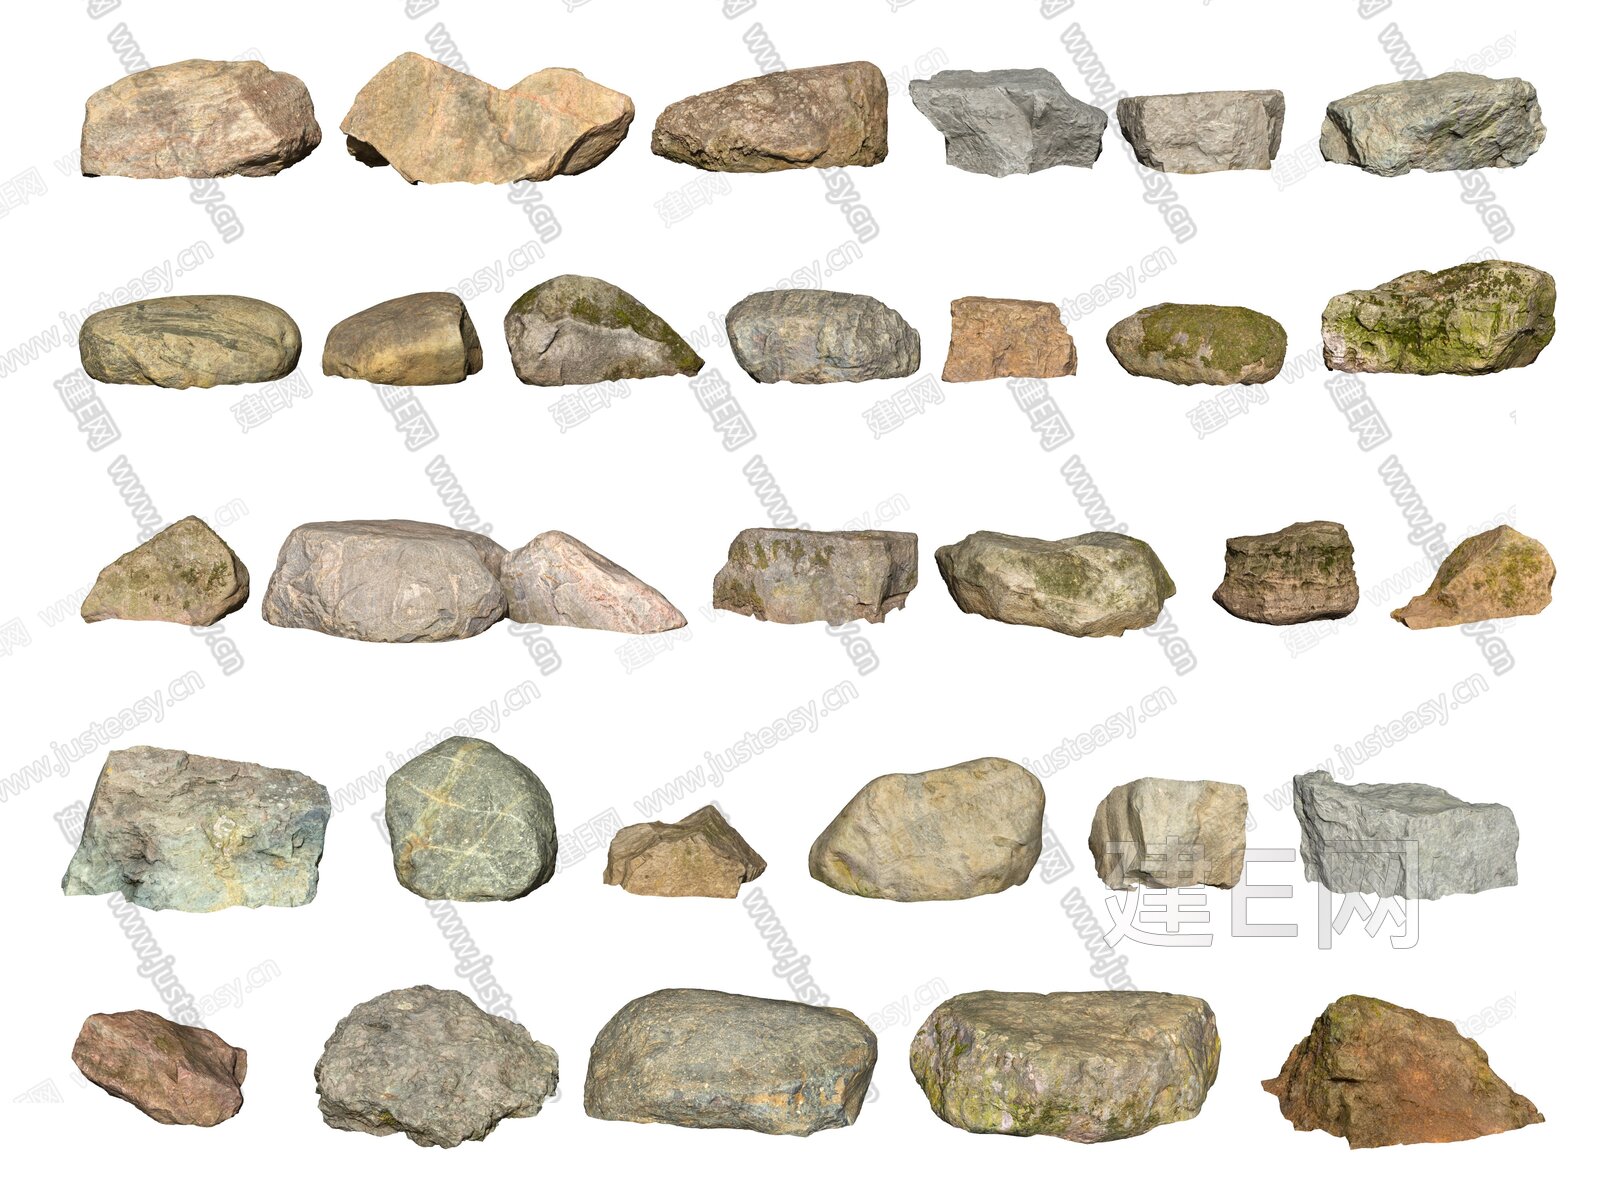 毛石板岩石材粗糙的石头石材 (2)材质贴图下载-【集简空间】「每日更新」